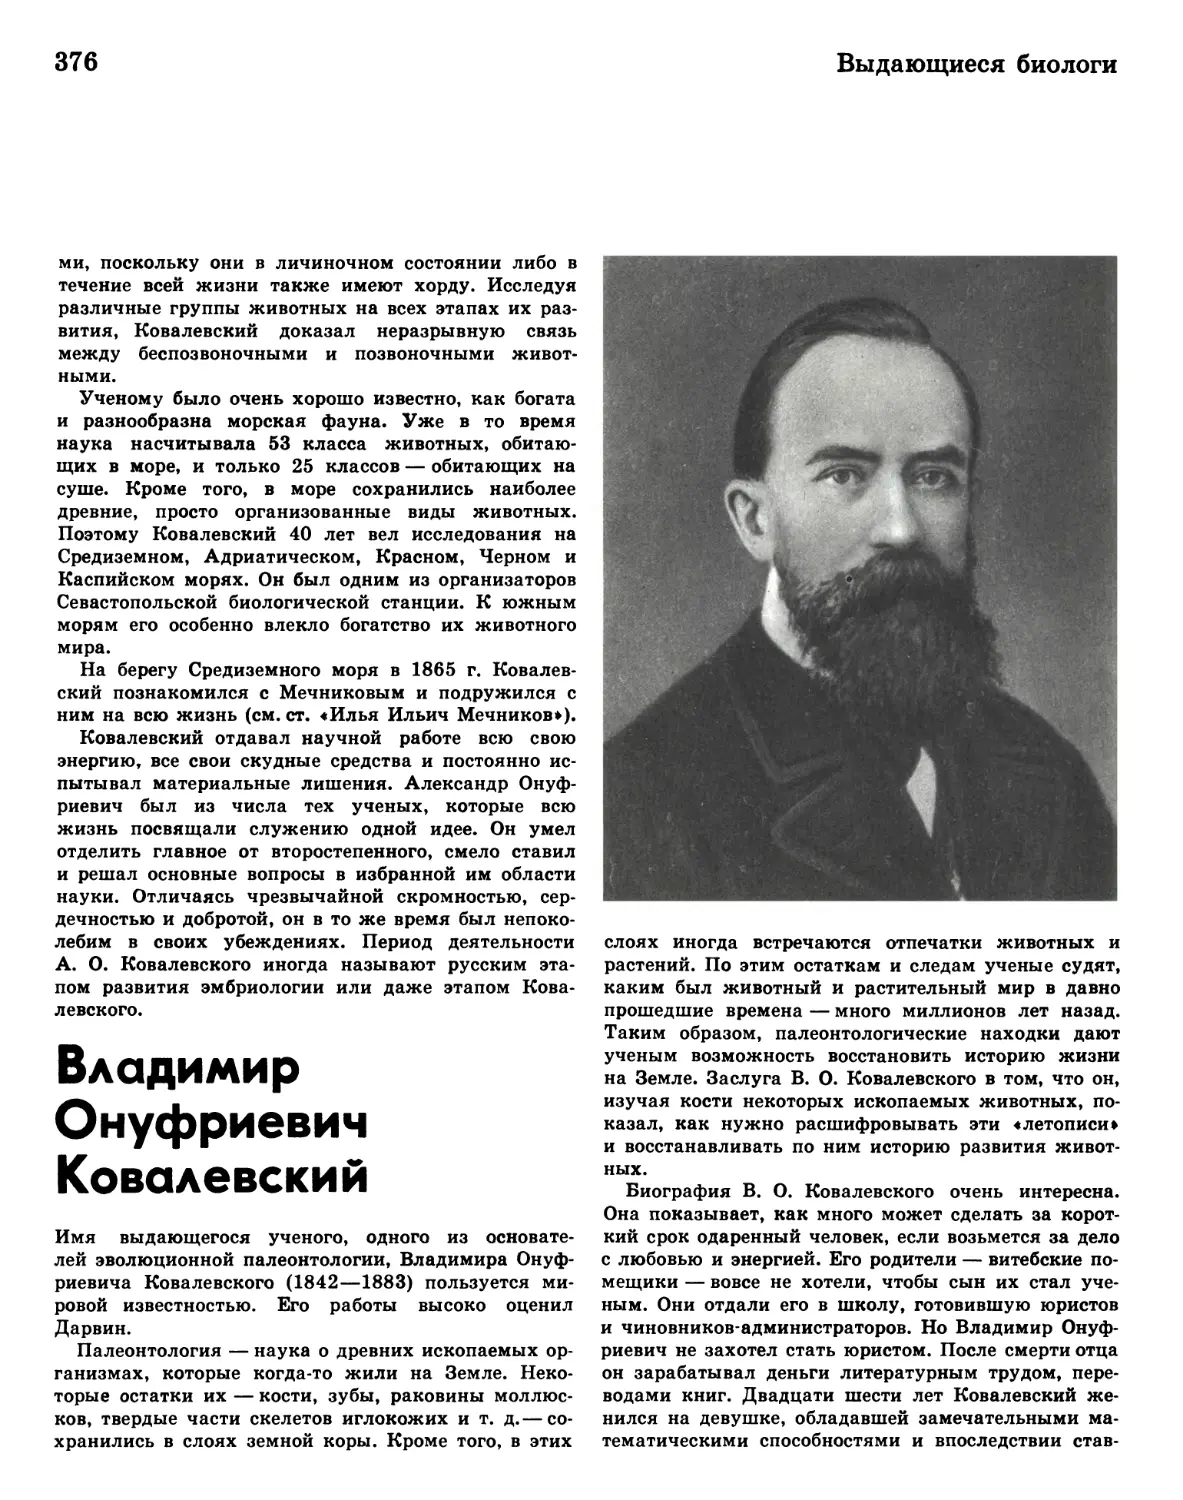 Владимир Онуфриевич Ковалевский